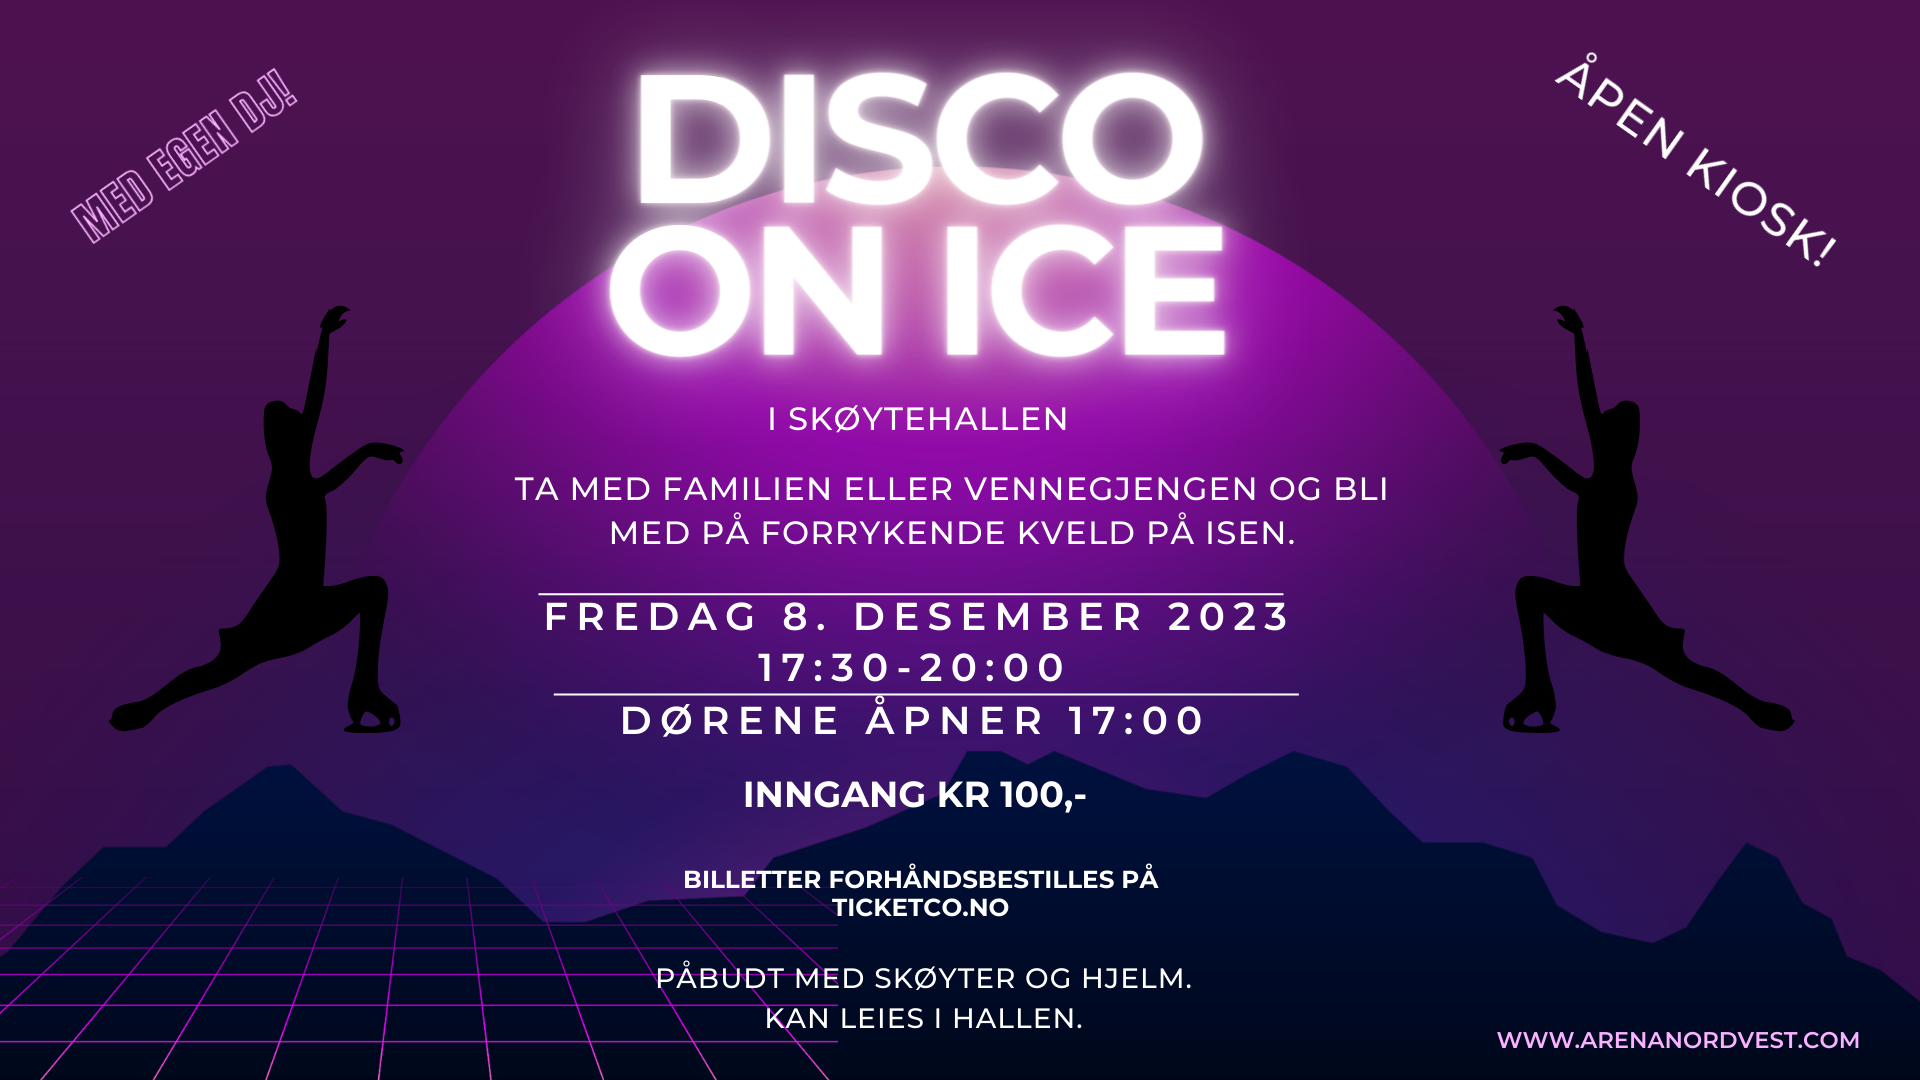 Disco on ice2023